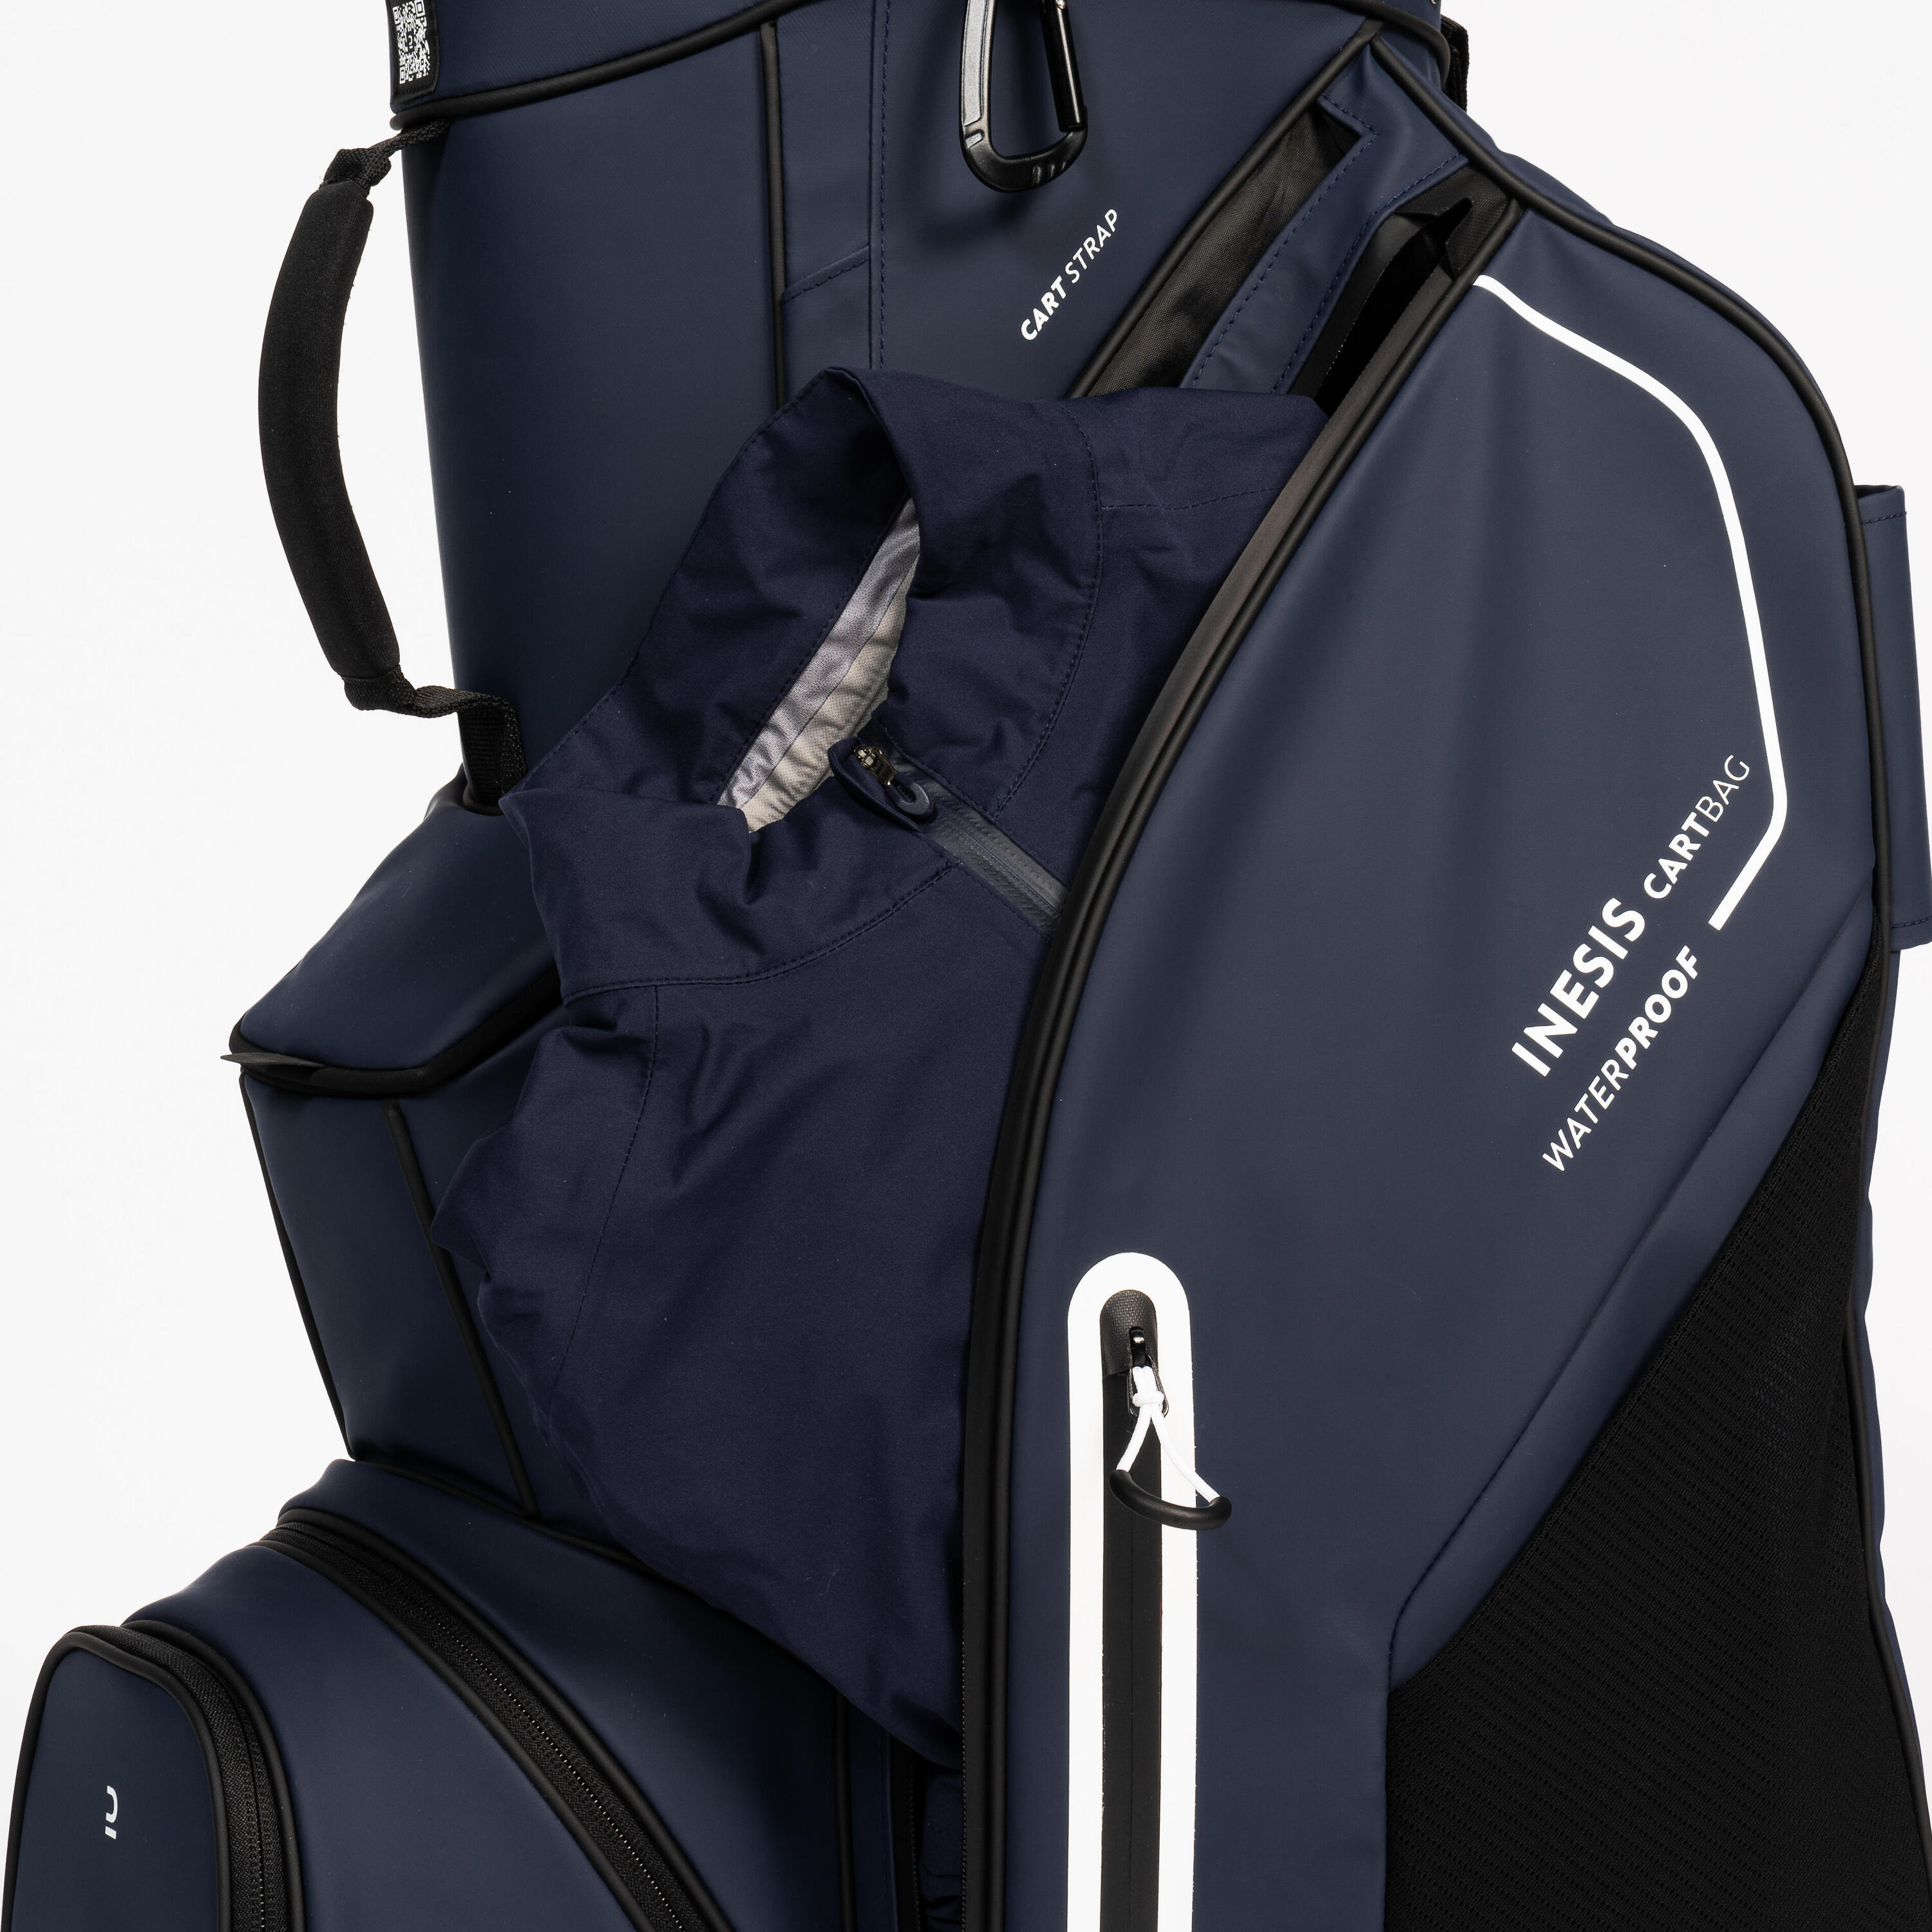 Golf trolley bag waterproof – INESIS Cart blue 4/12